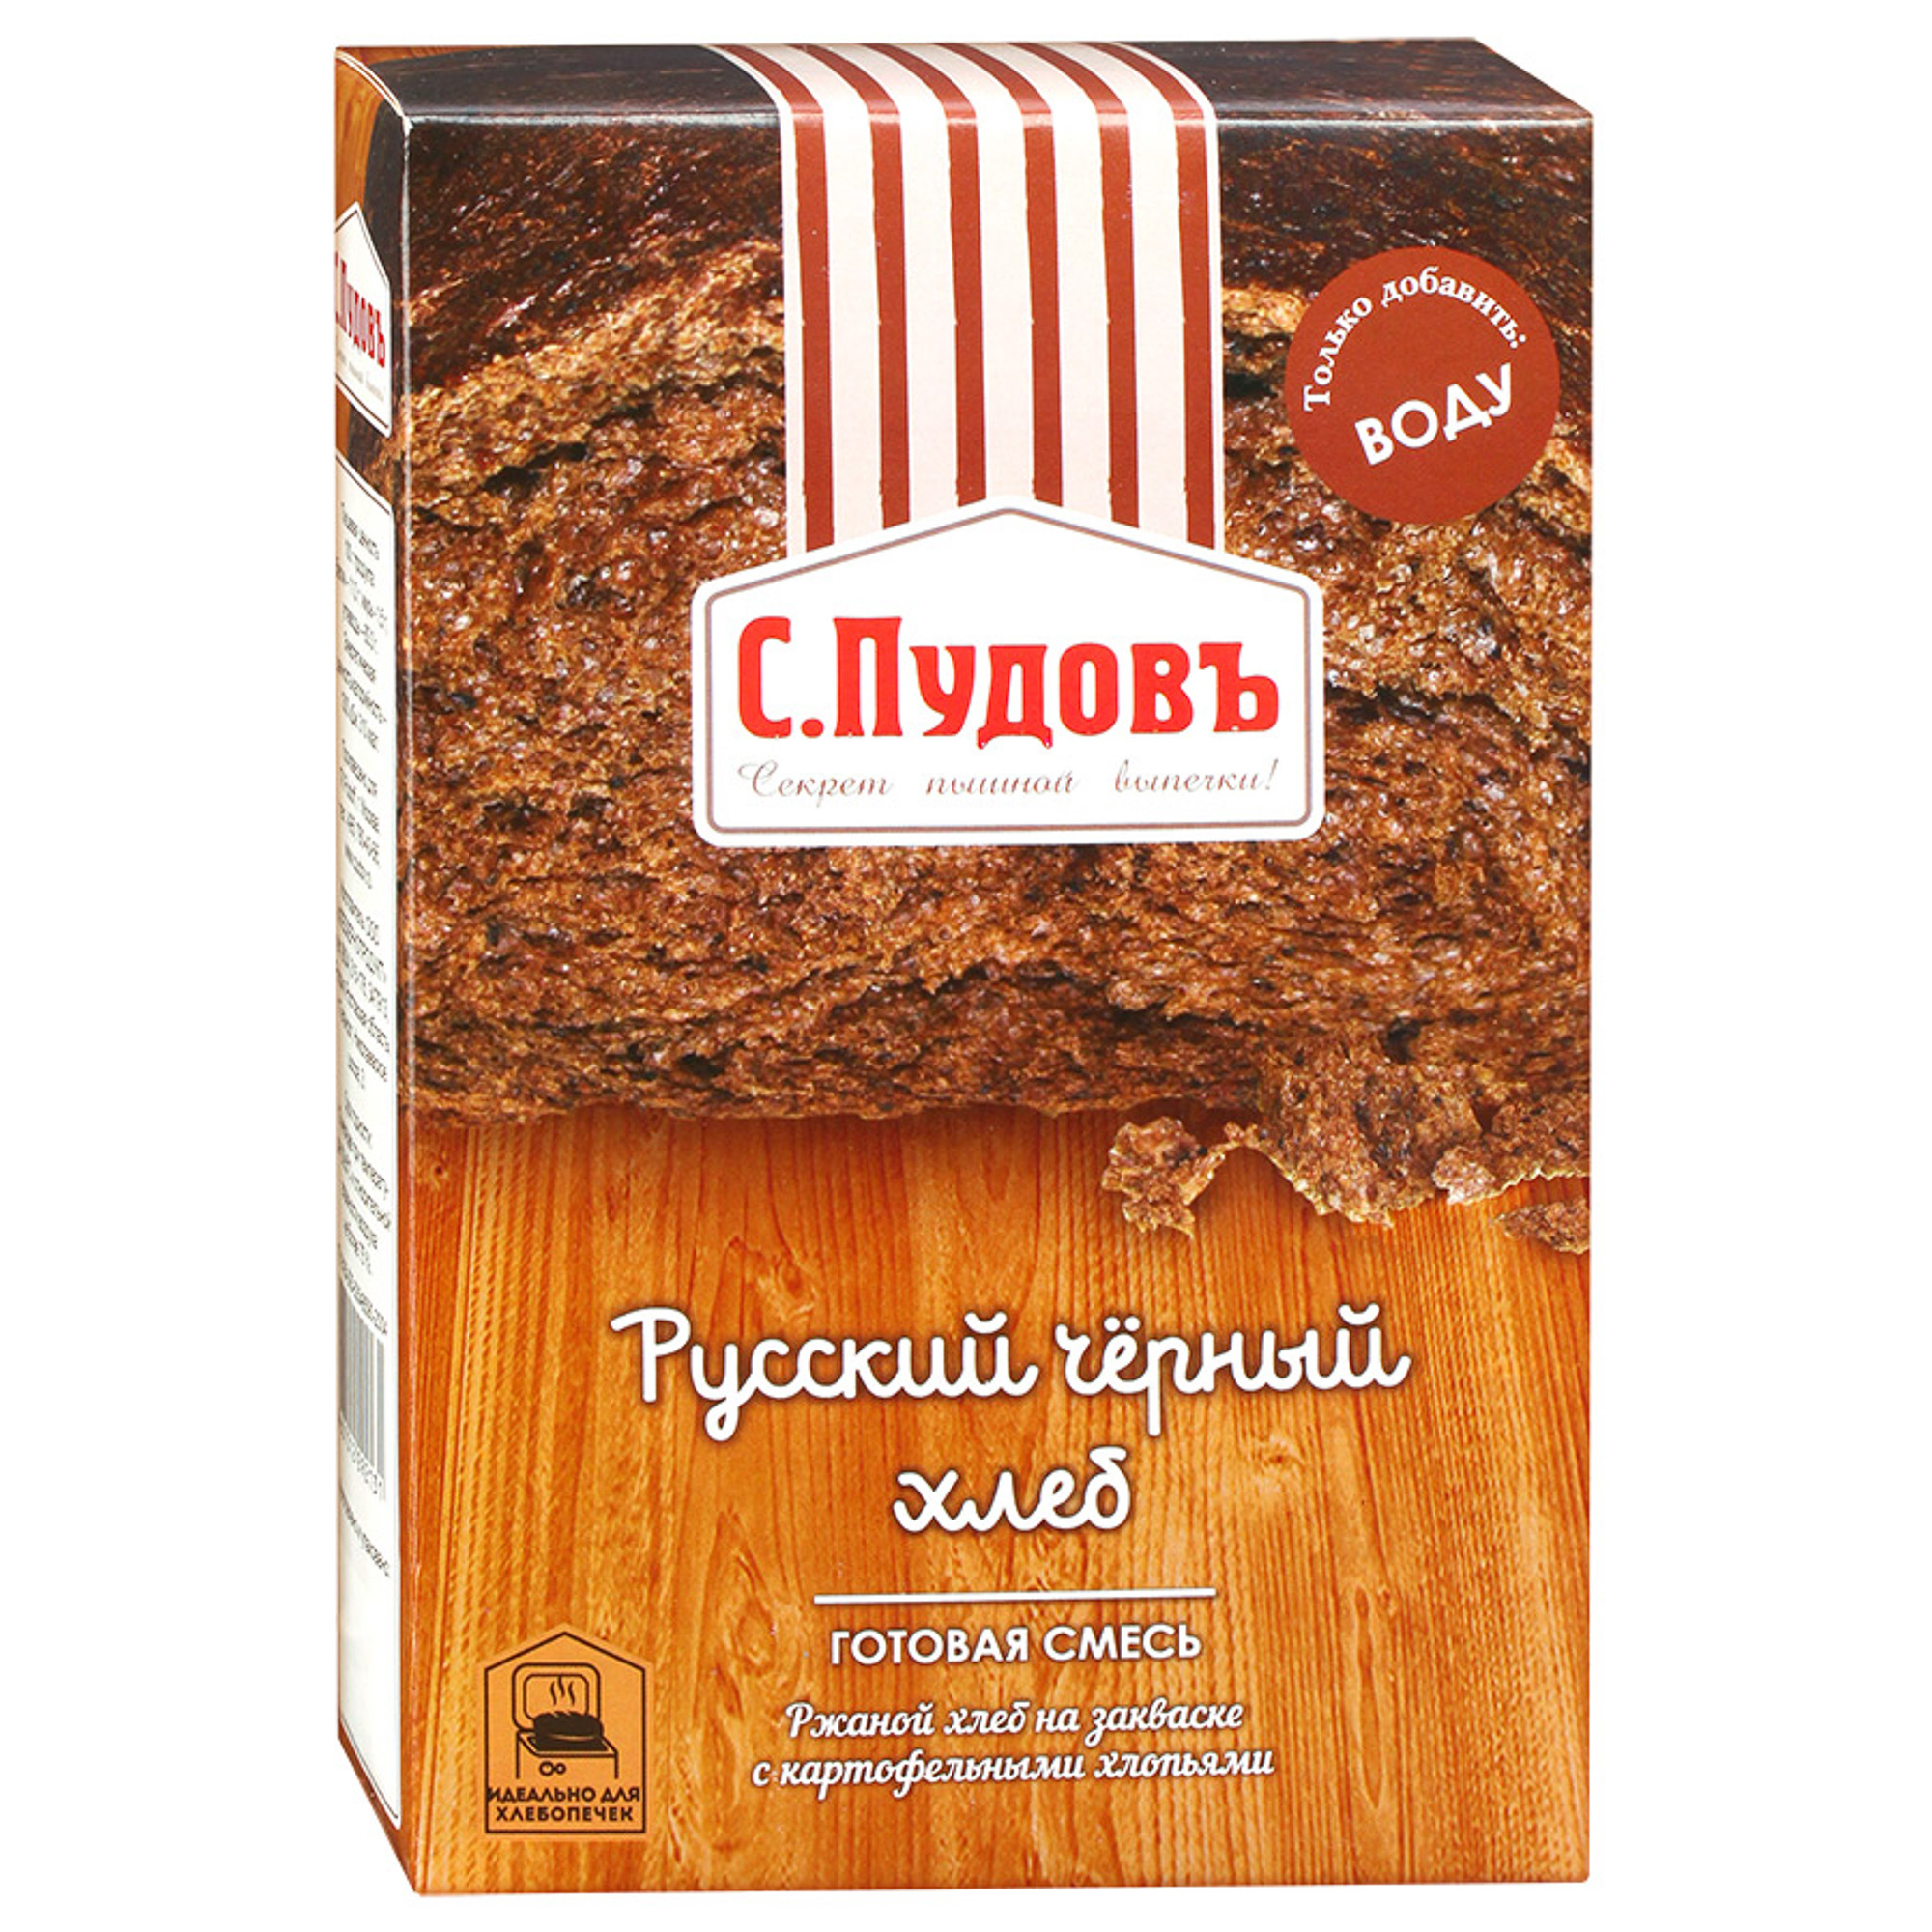 Хлебная смесь С.Пудовъ Русский черный хлеб 500 г хлебная смесь фитодар хлеб бородинский 500 г